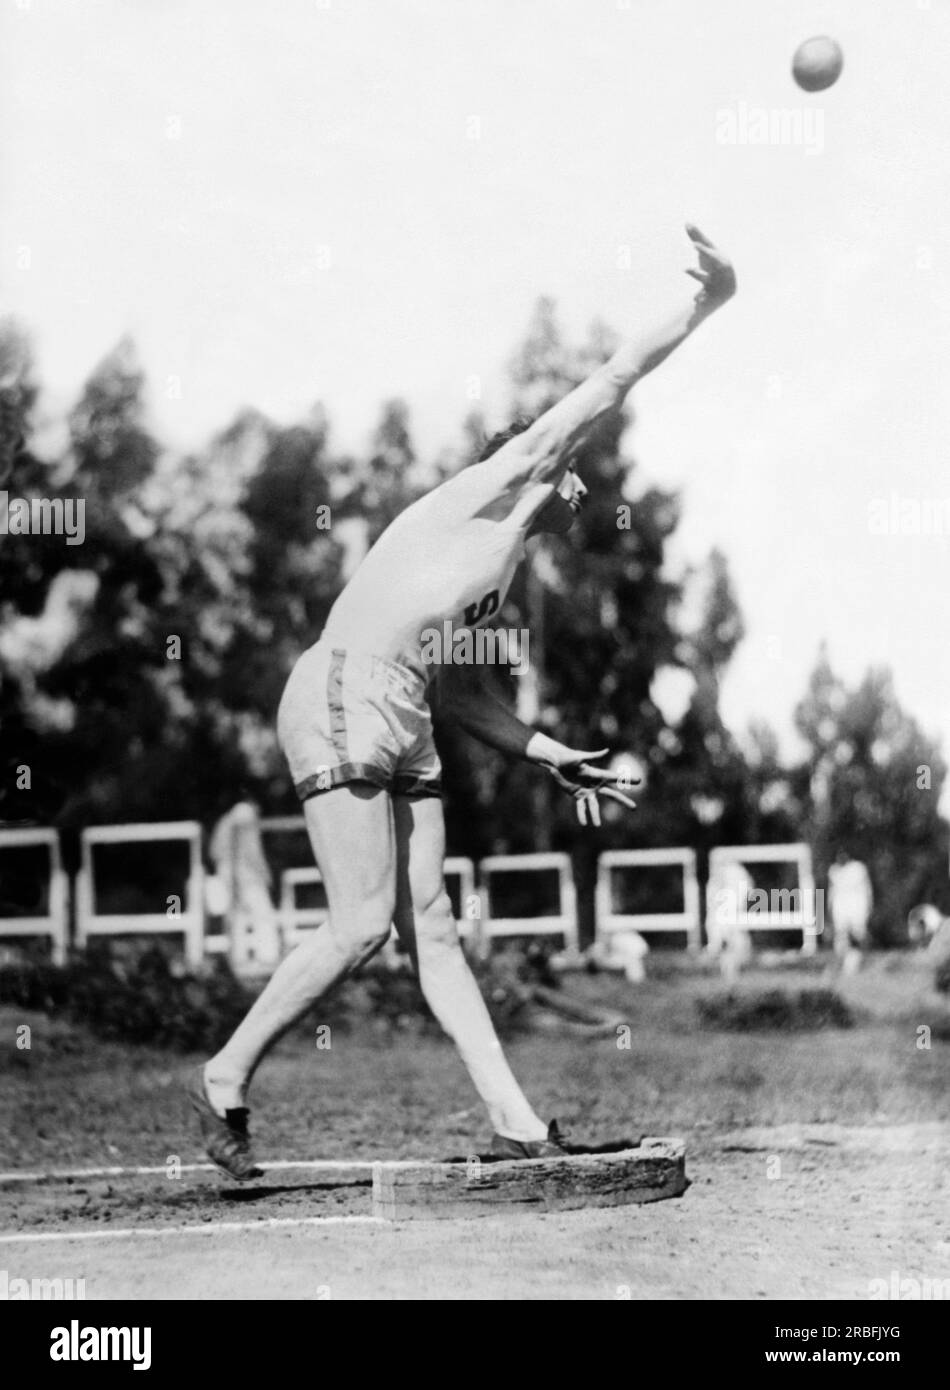 Stanford, Kalifornien: 15. Mai 1925 Glenn Hartranft, Gewinner der olympischen Silbermedaille der Stanford University, bricht den Weltrekord in der Praxis eine Woche, nachdem er den Rekord für das Herumwerfen des Discus gebrochen hat. Stockfoto